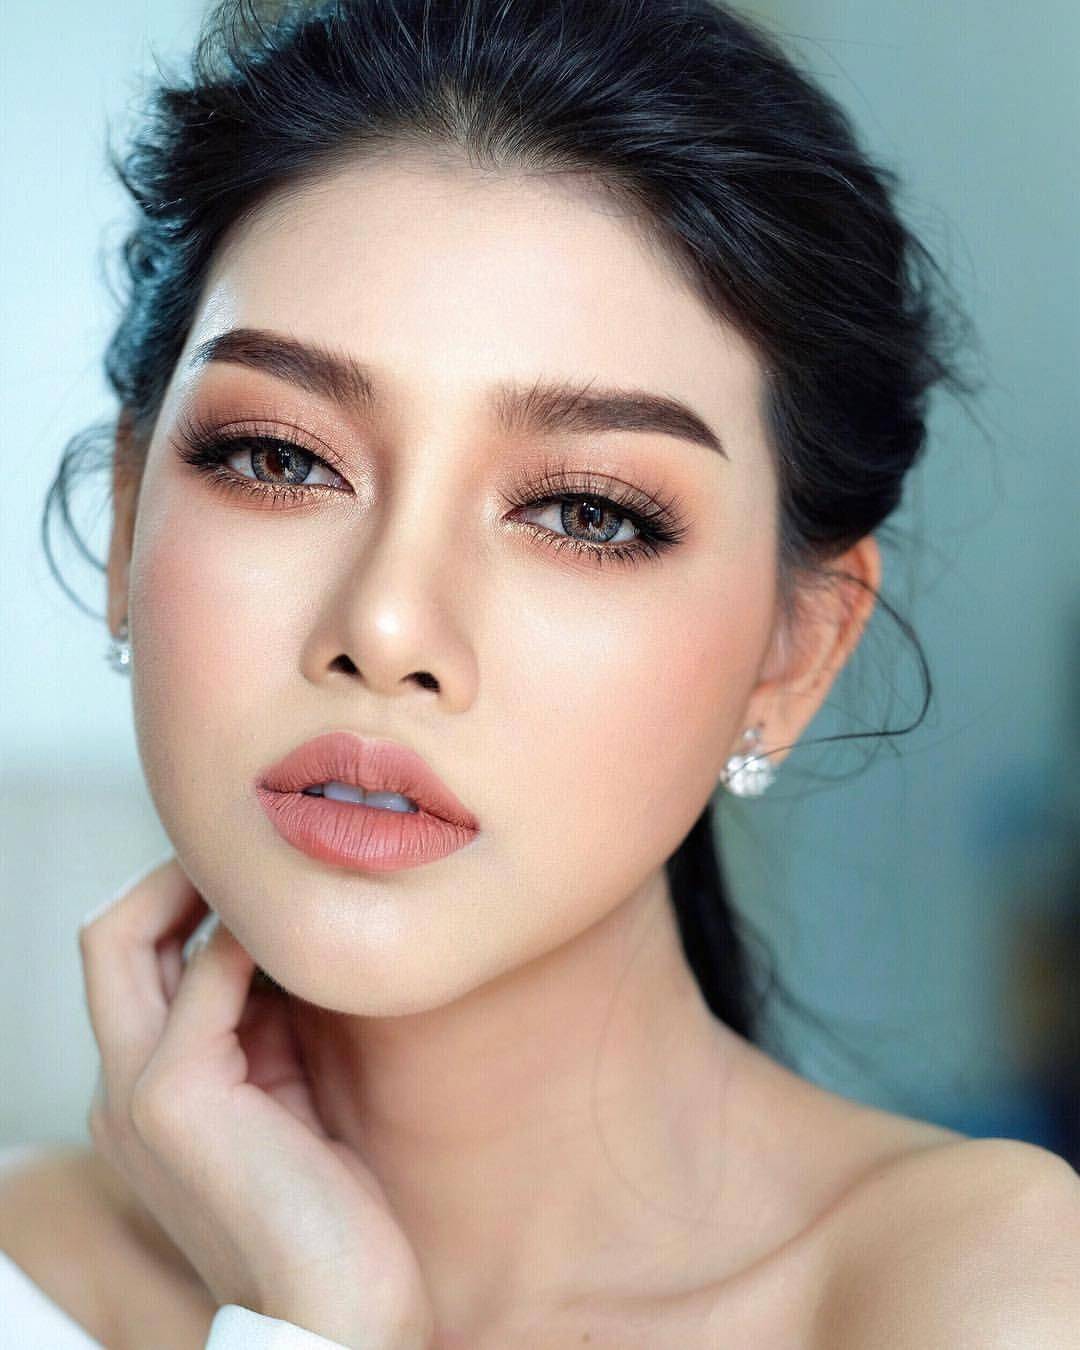 Азиатский макияж - дневной и вечерний варианты, особенности